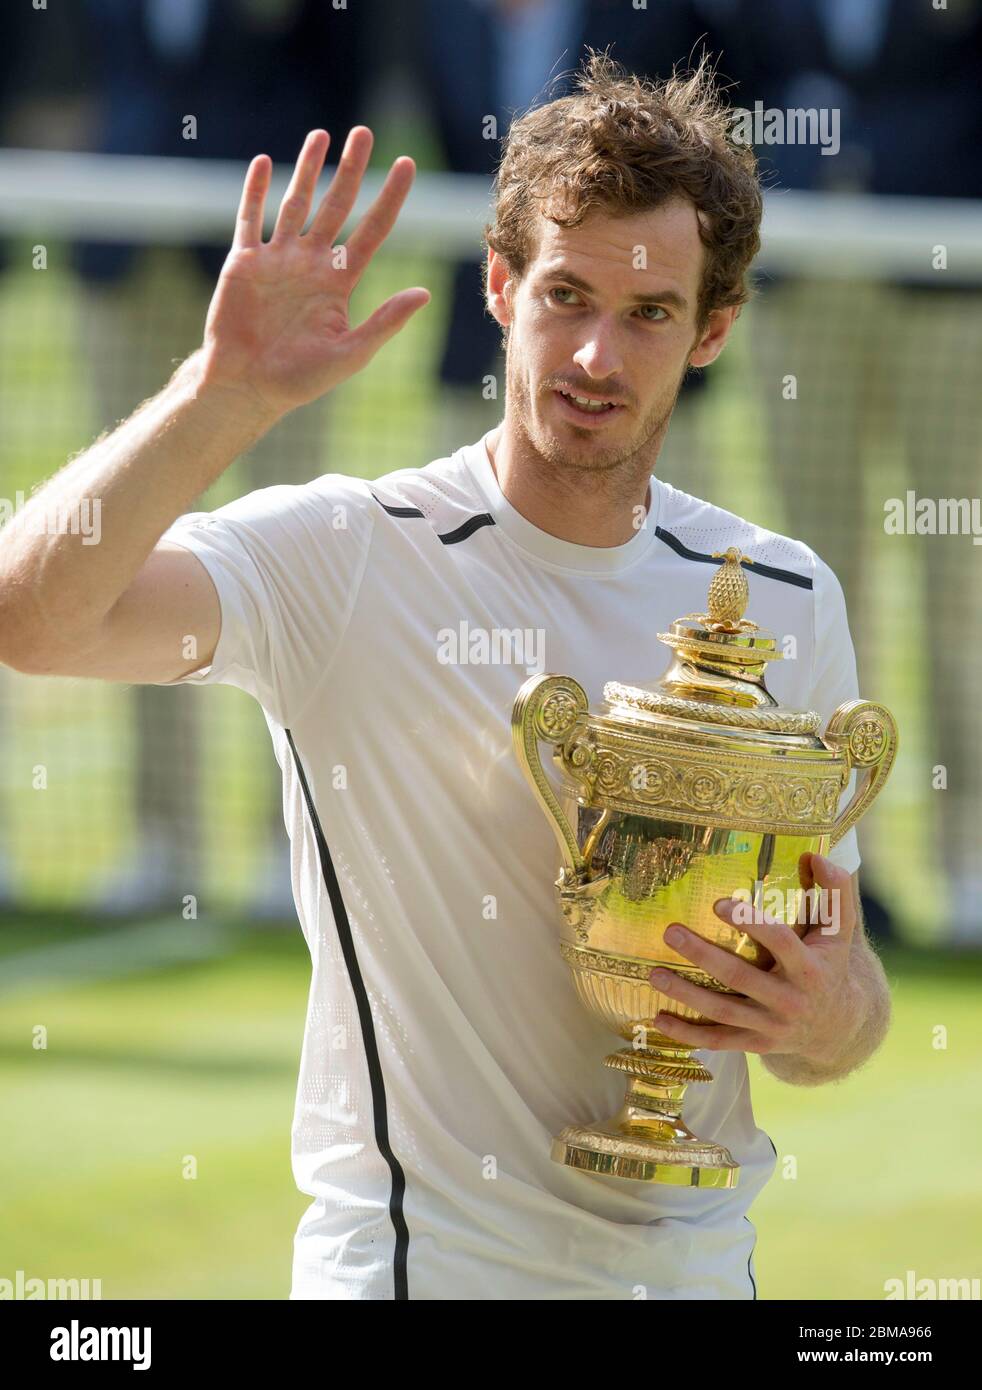 10 luglio 2016, Wimbledon, Londra: Finale di Mens Singles, Centre Court, Andy Murray tiene il trofeo di Wimbledon dopo aver sconfitto Milos Raonic del Canada. Foto Stock